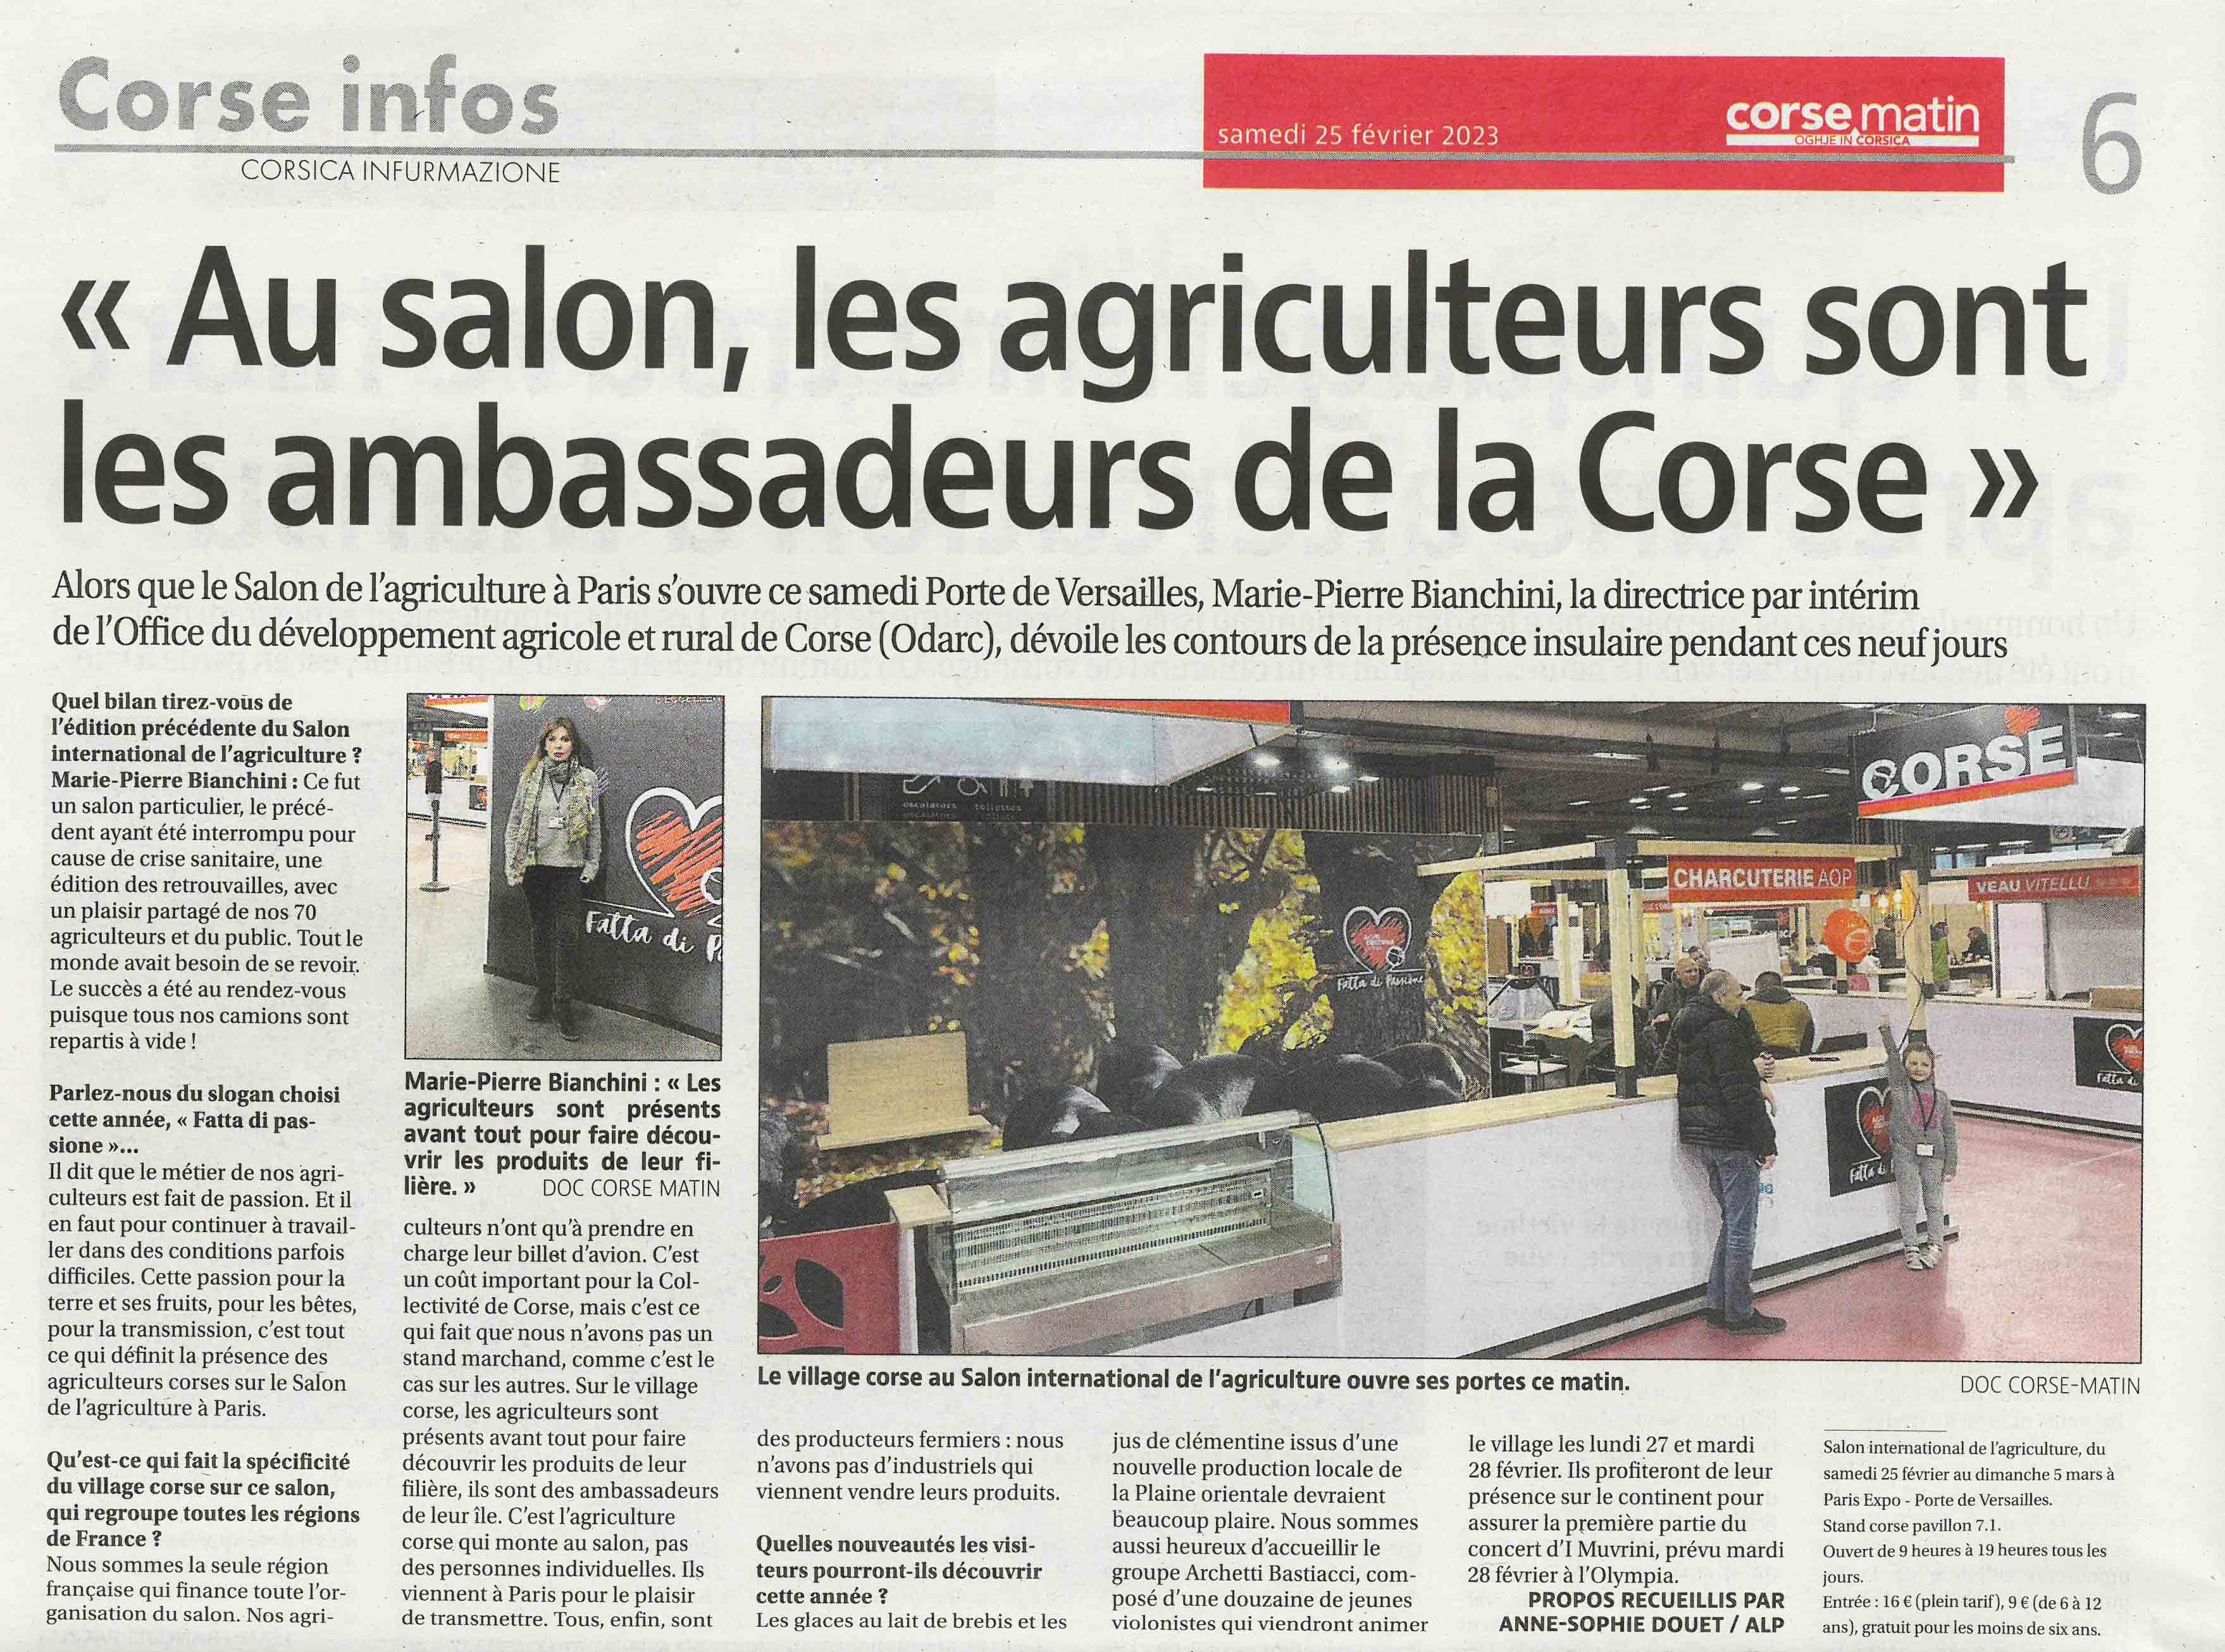 La Corse au Salon de International de l'Agriculture